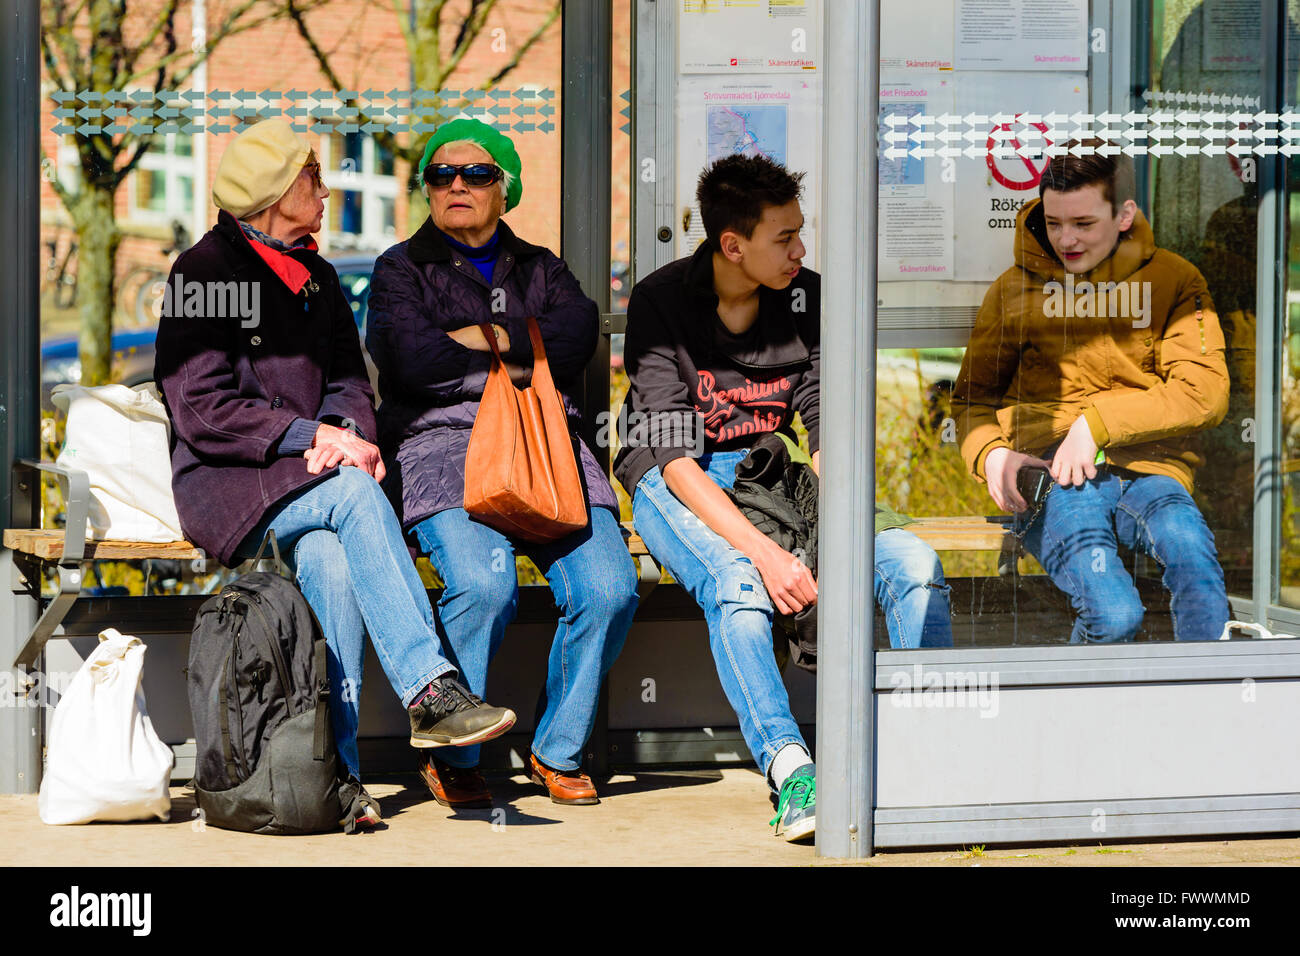 Simrishamn, Schweden - 1. April 2016: Menschen warten auf einen Bus in einer Wartehalle. Echte Menschen im Alltag. Stockfoto